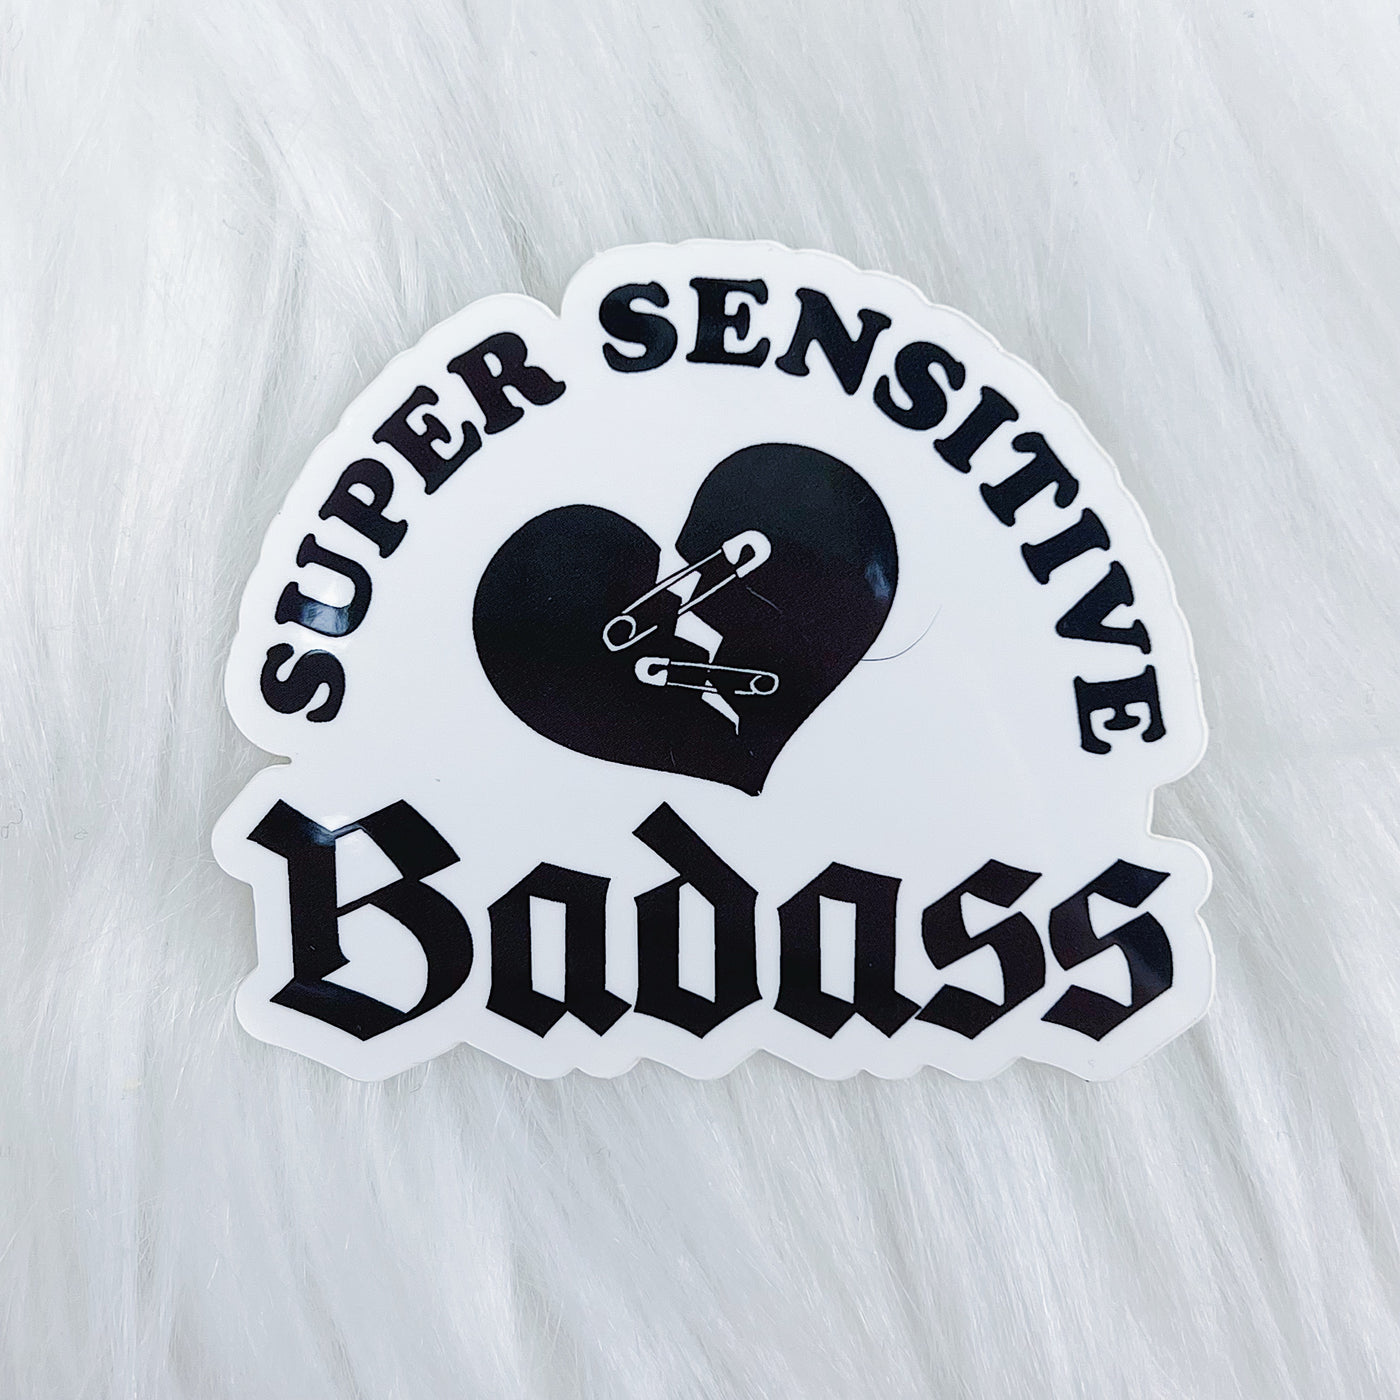 Super Sensitive Badass Vinyl Sticker Die Cut